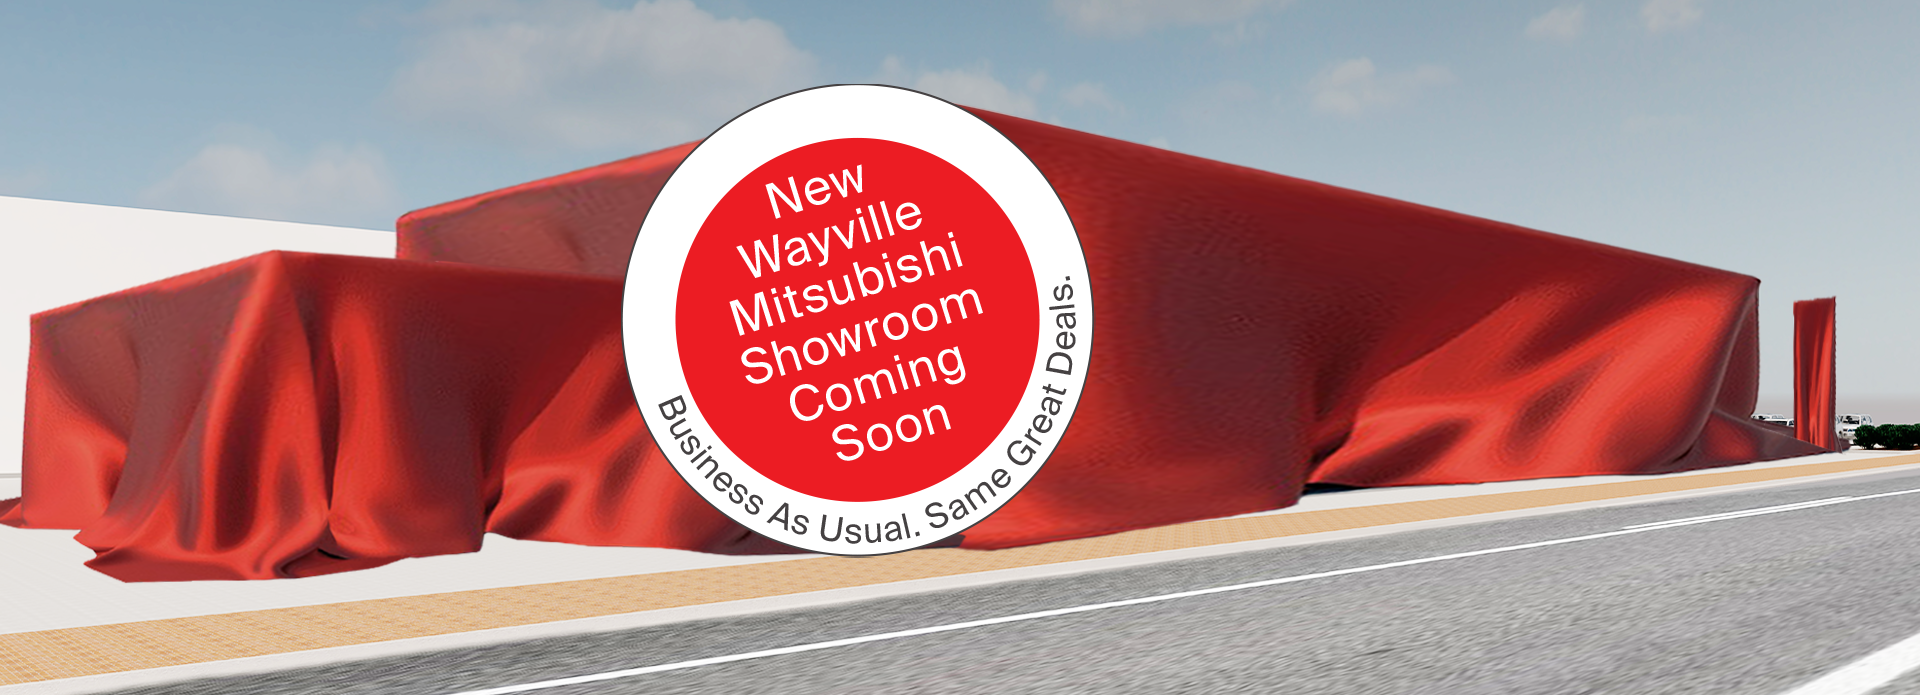 WAYVILLE MITSUBISHI SHOWROOM